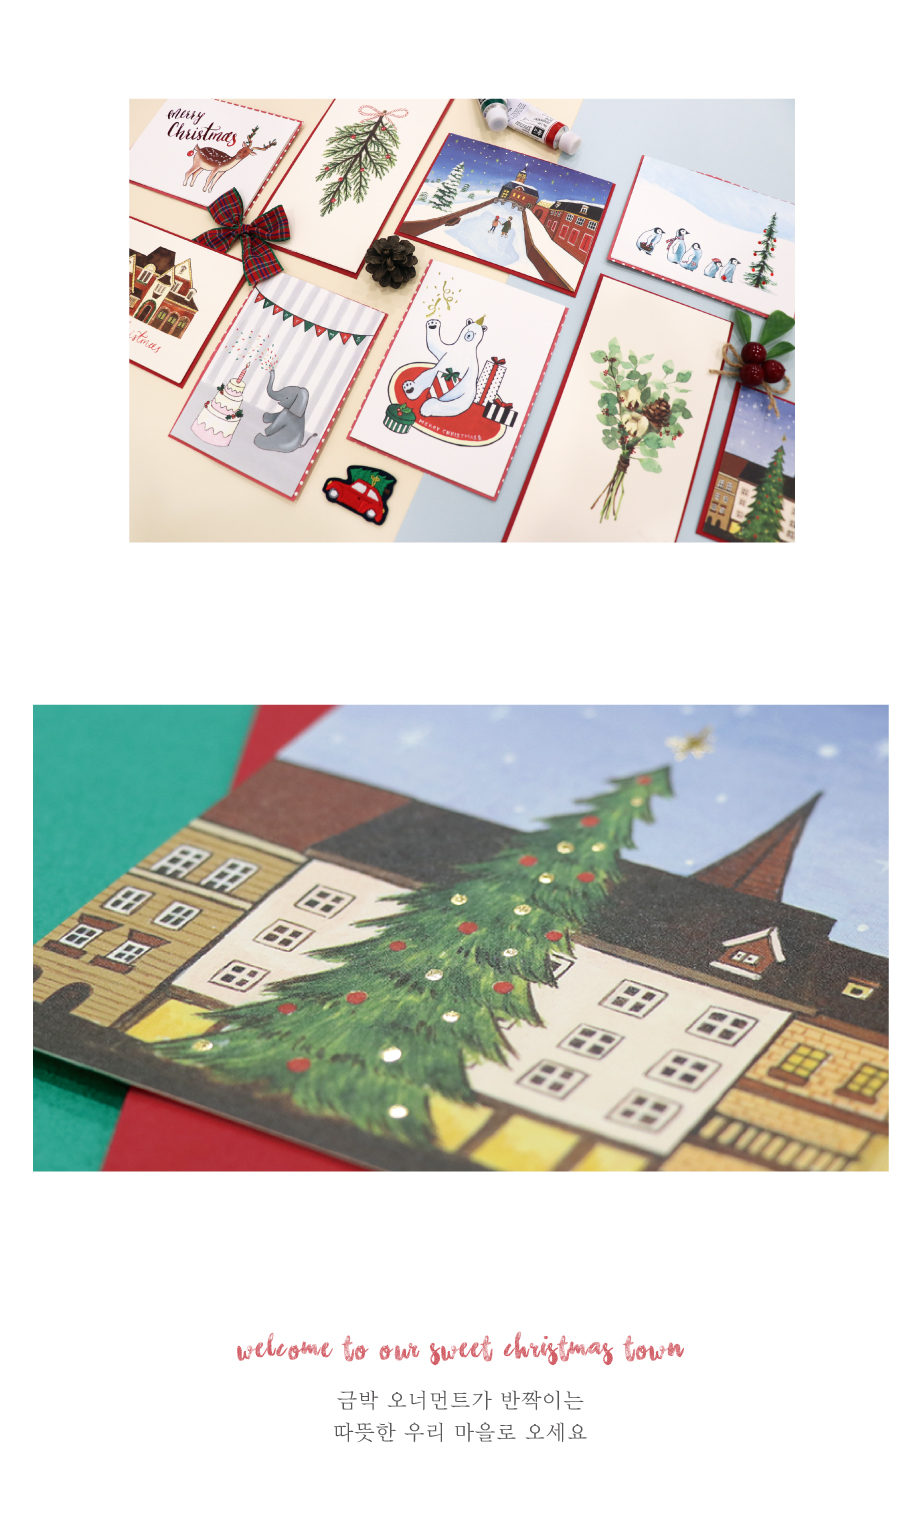 하베스터 일러스트 카드 - 06따뜻한 마을 1,800원 - 하베스터 디자인문구, 카드/편지/봉투, 카드, 크리스마스 카드 바보사랑 하베스터 일러스트 카드 - 06따뜻한 마을 1,800원 - 하베스터 디자인문구, 카드/편지/봉투, 카드, 크리스마스 카드 바보사랑